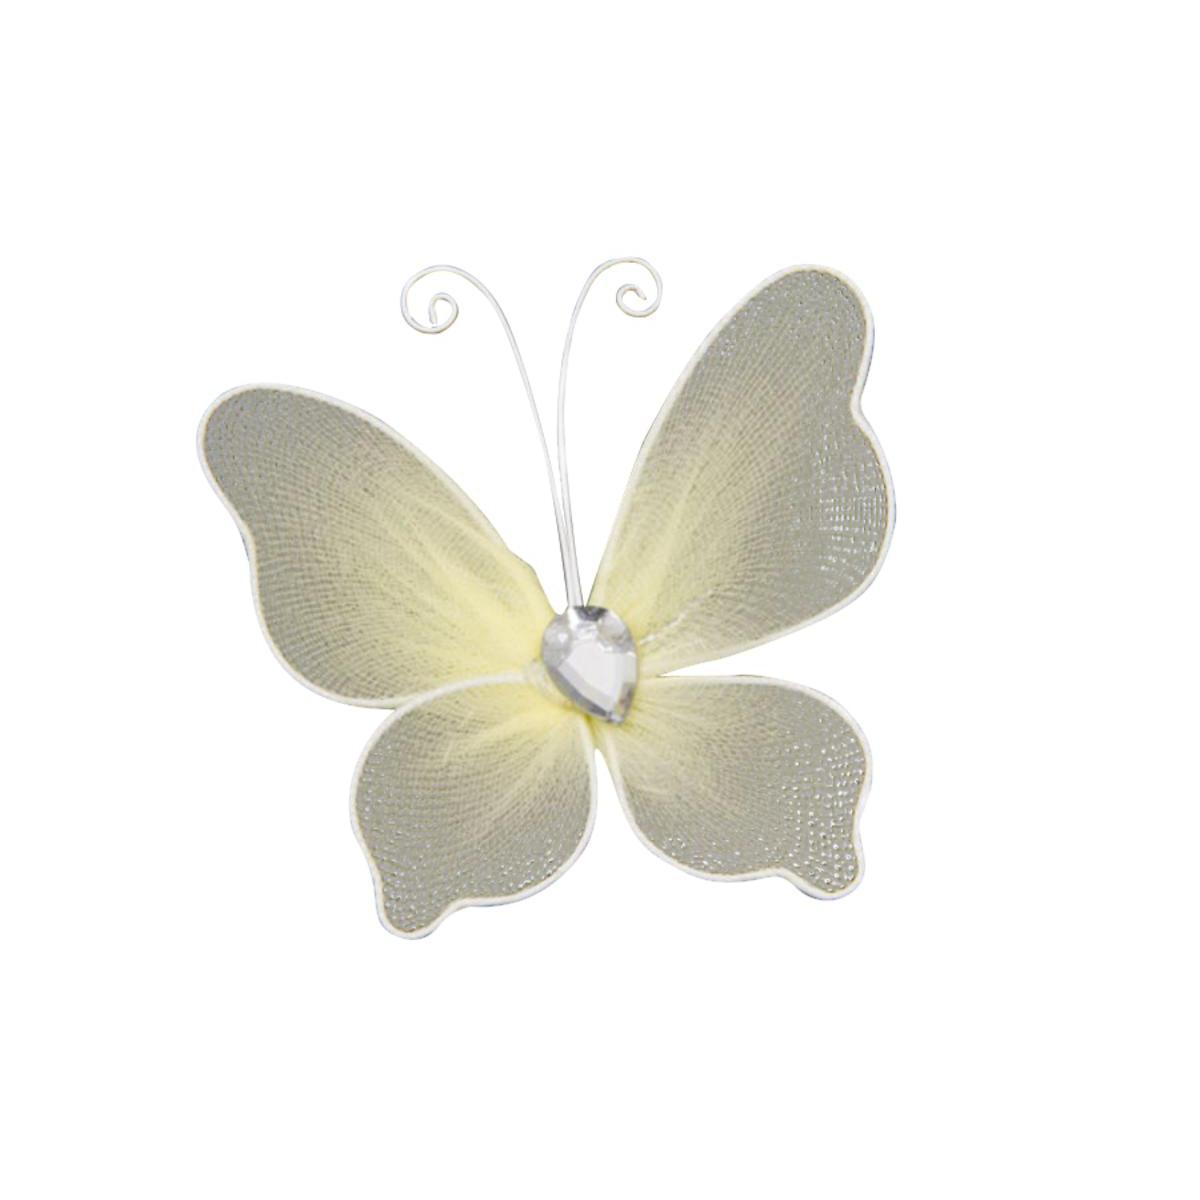 6 papillons décoratifs armature métal - Polyester - 5 x 6 cm - Blanc ivoire